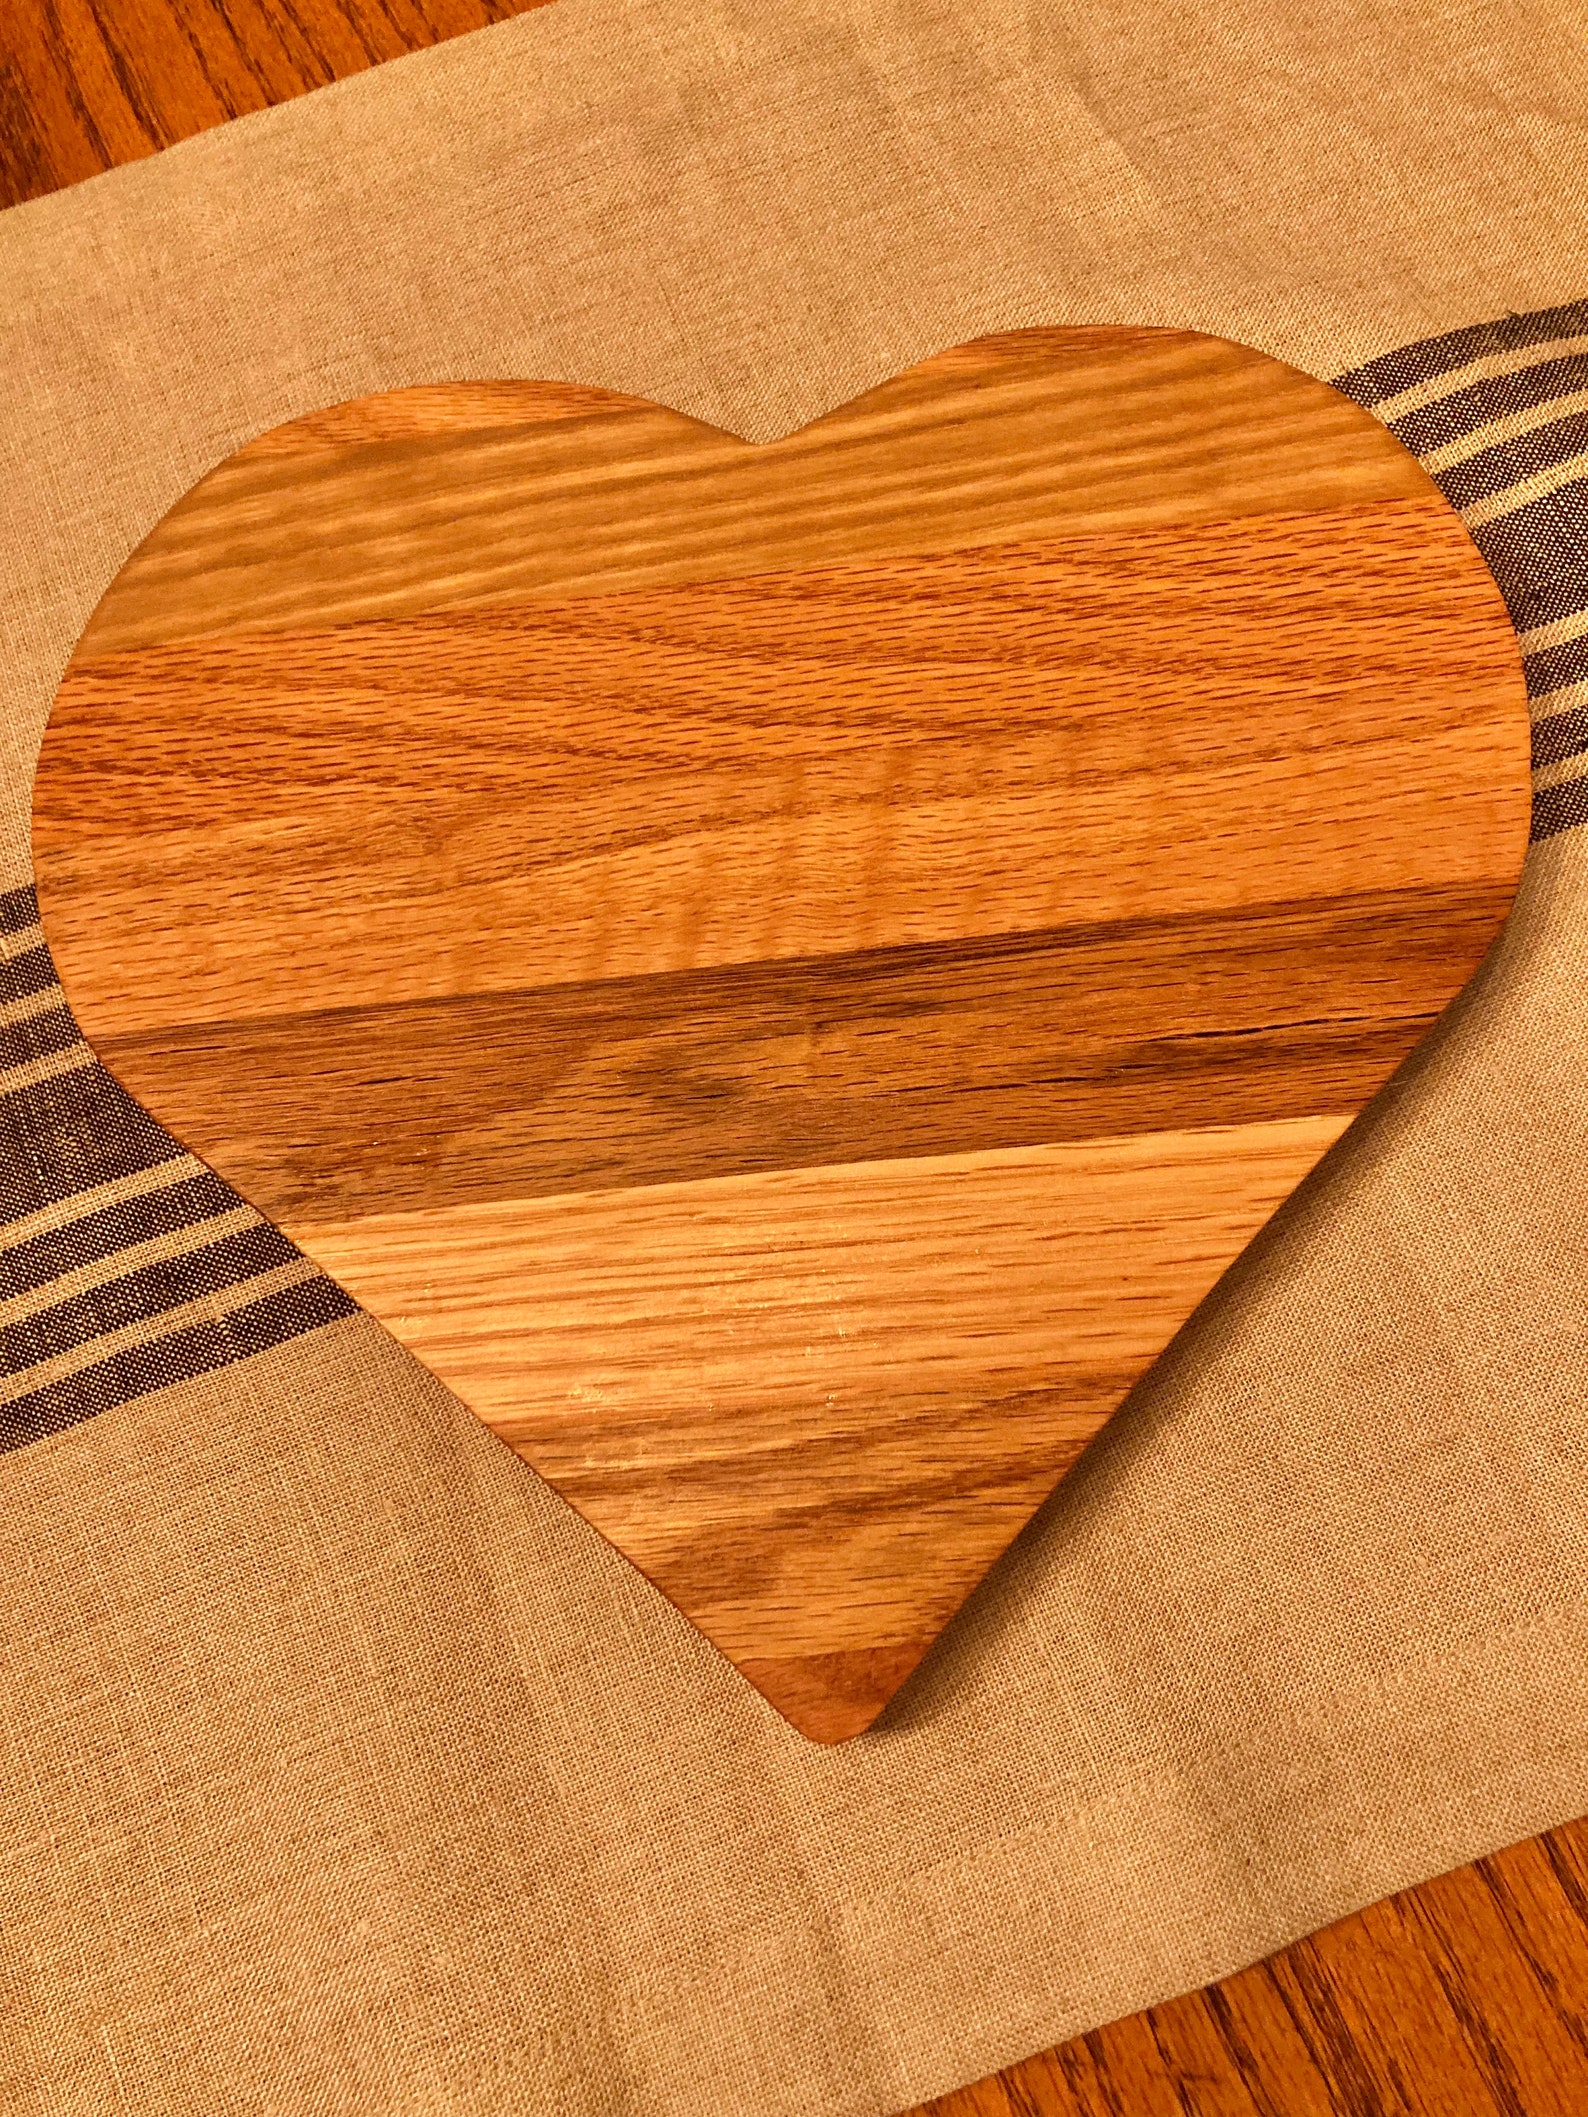 Farmhouse style heart shaped wooden board